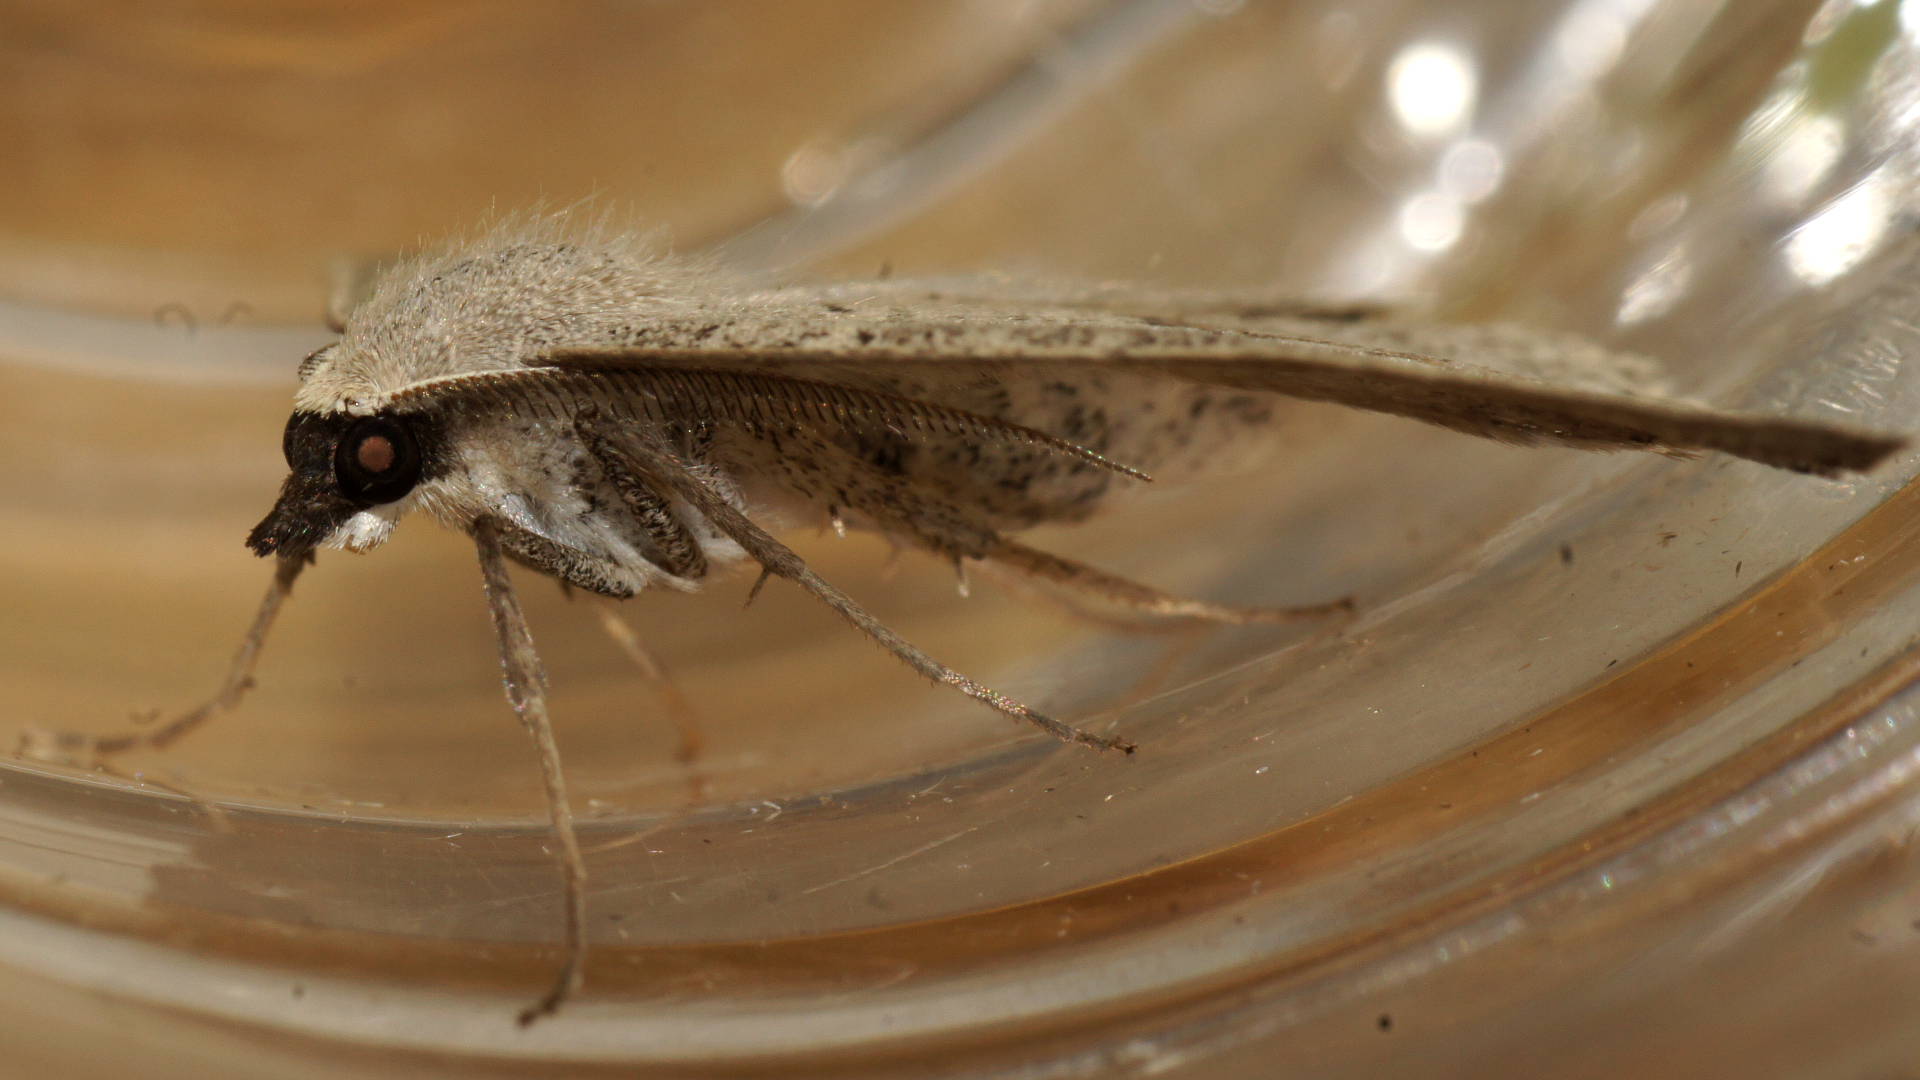 Grey Nearcha Moth (Nearcha dasyzona)